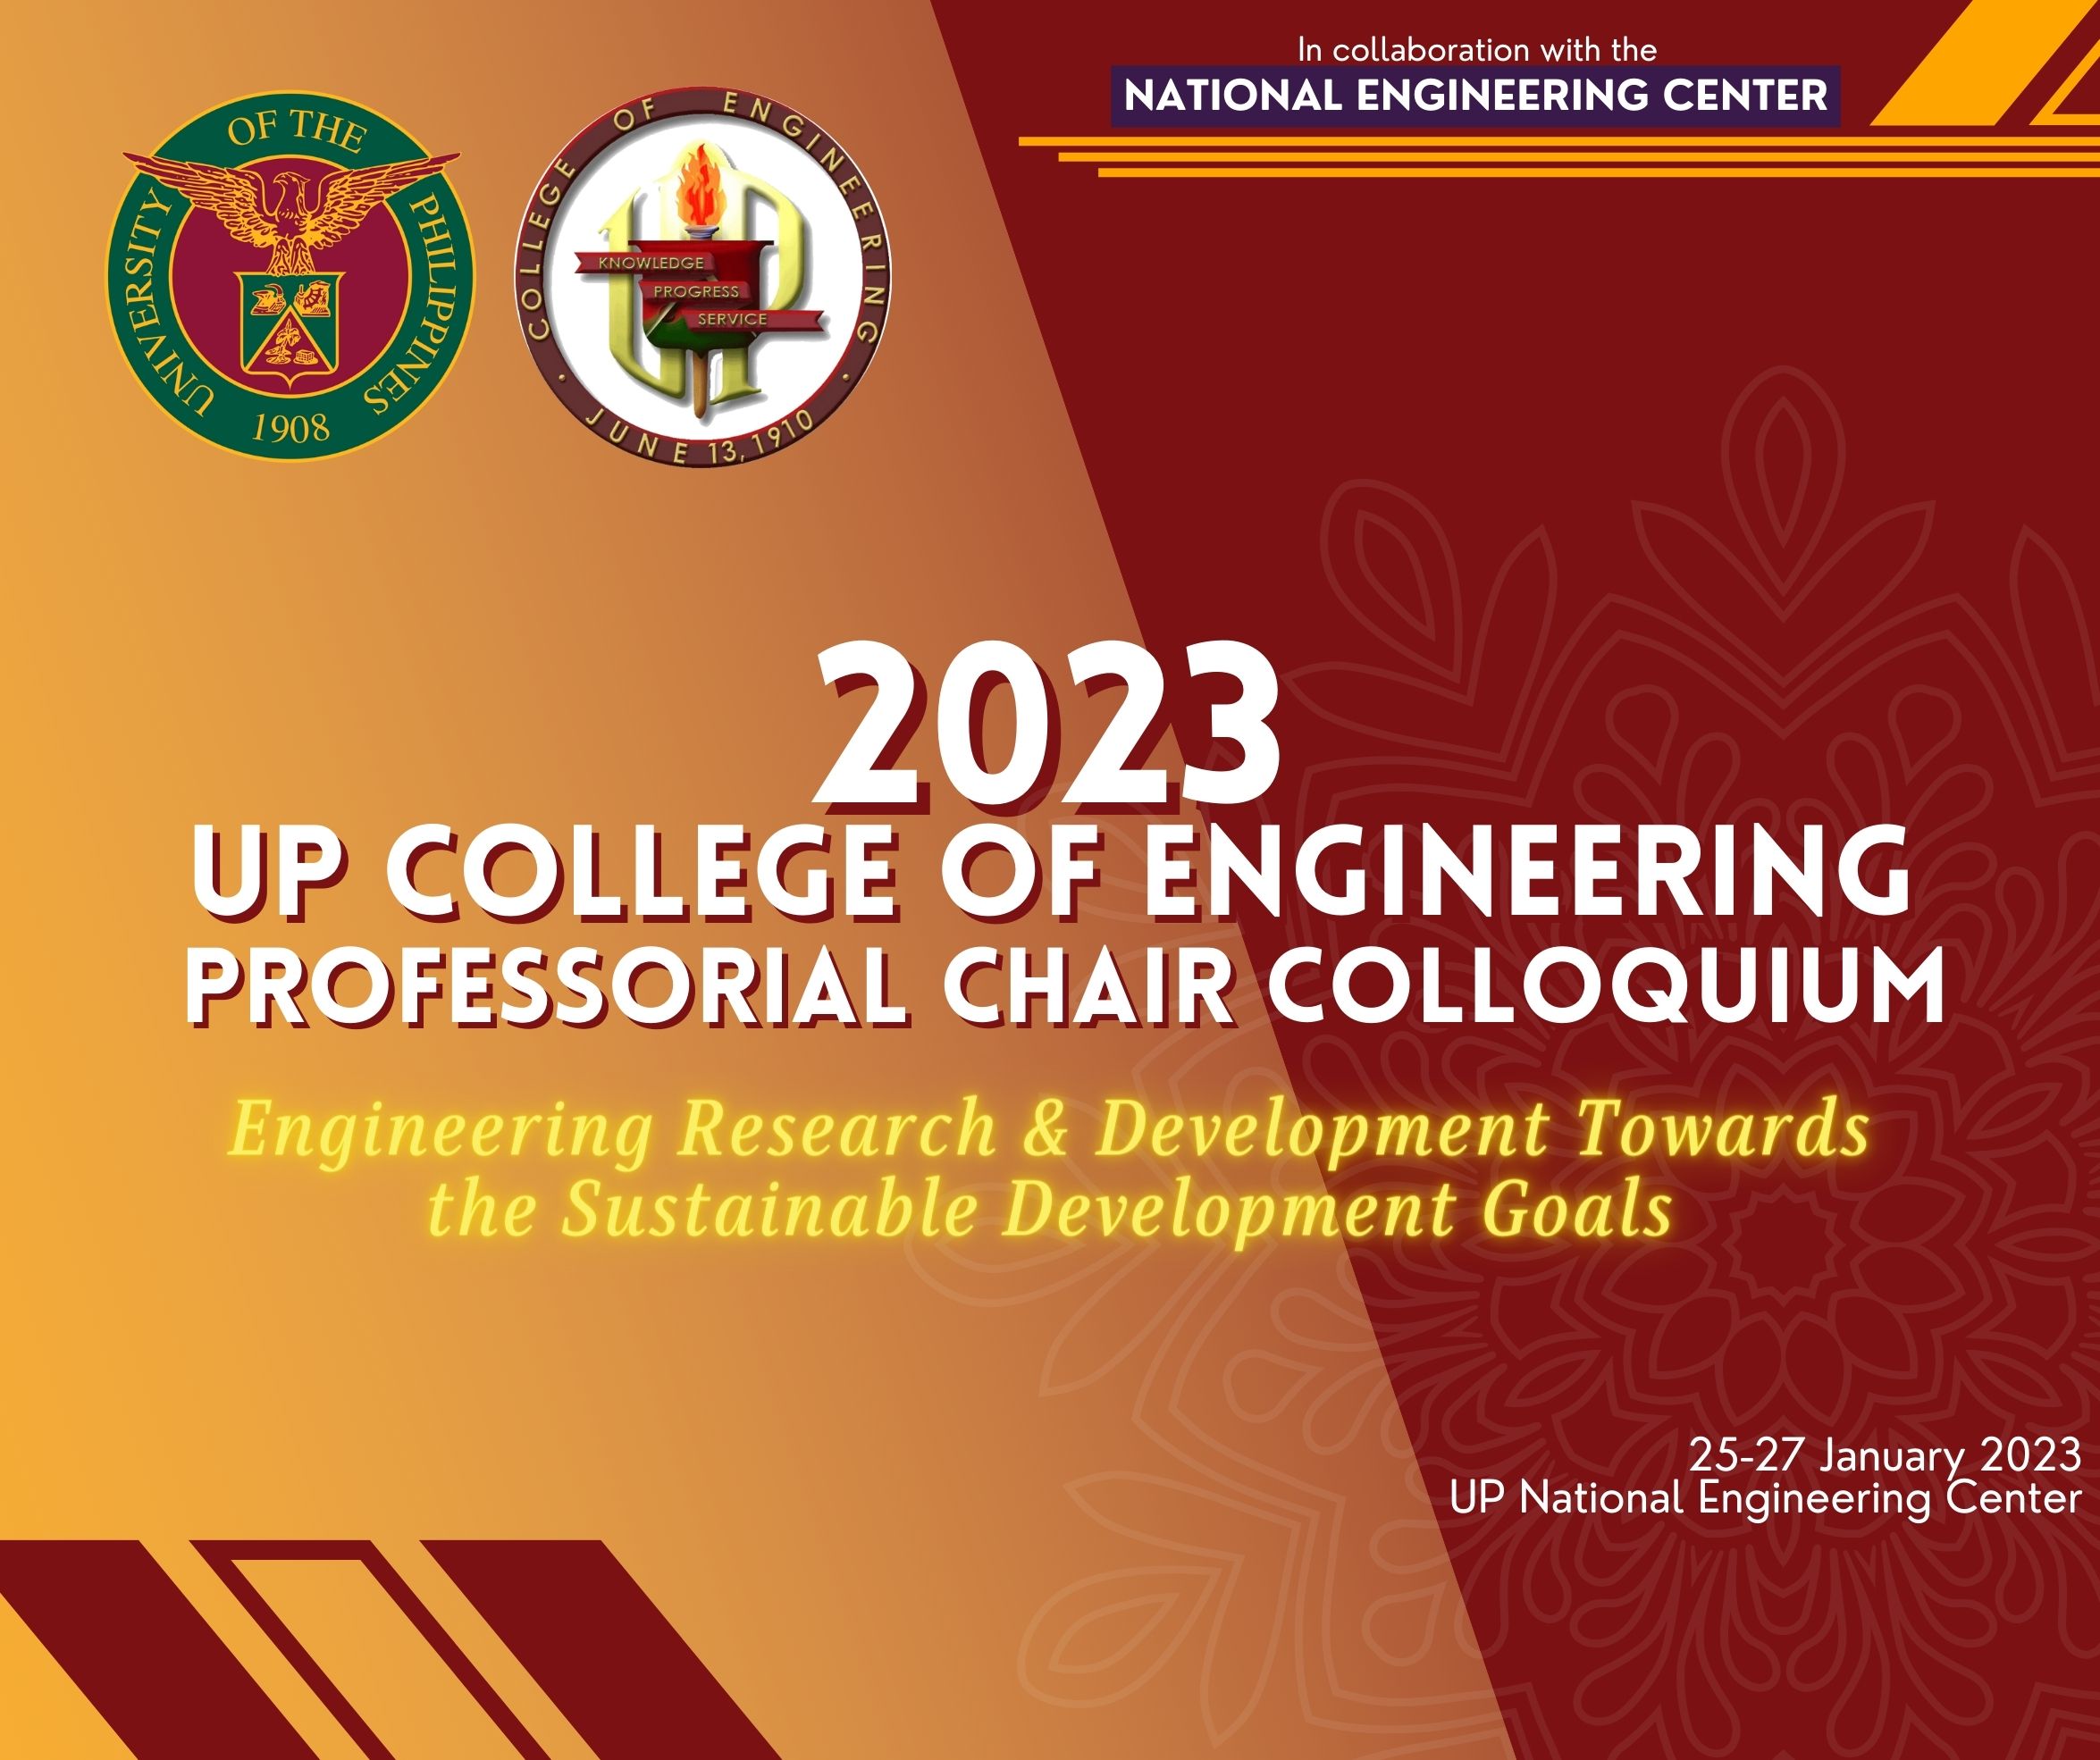 UPD COE holds 2023 PCA Colloquium